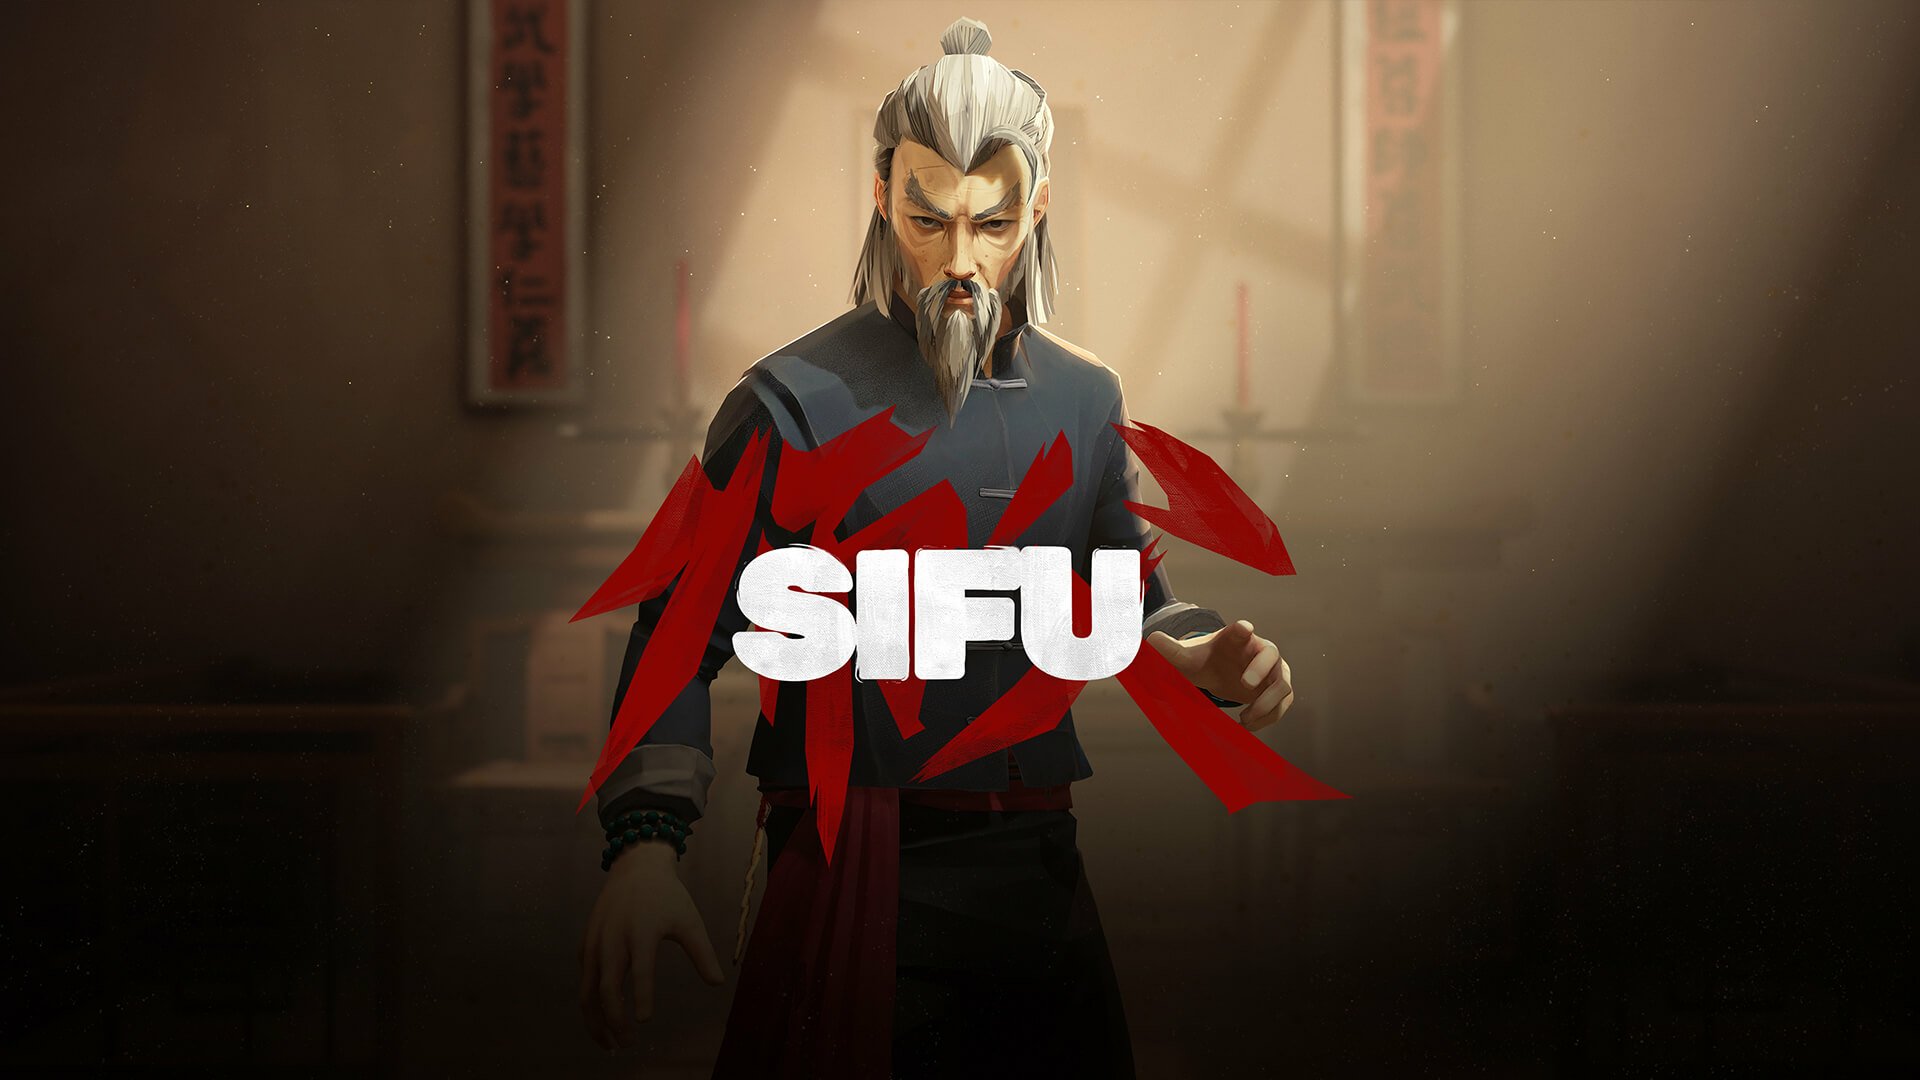 Le jeu d'arts martiaux Sifu a obtenu sa date de sortie pour février avec sa nouvelle bande-annonce.